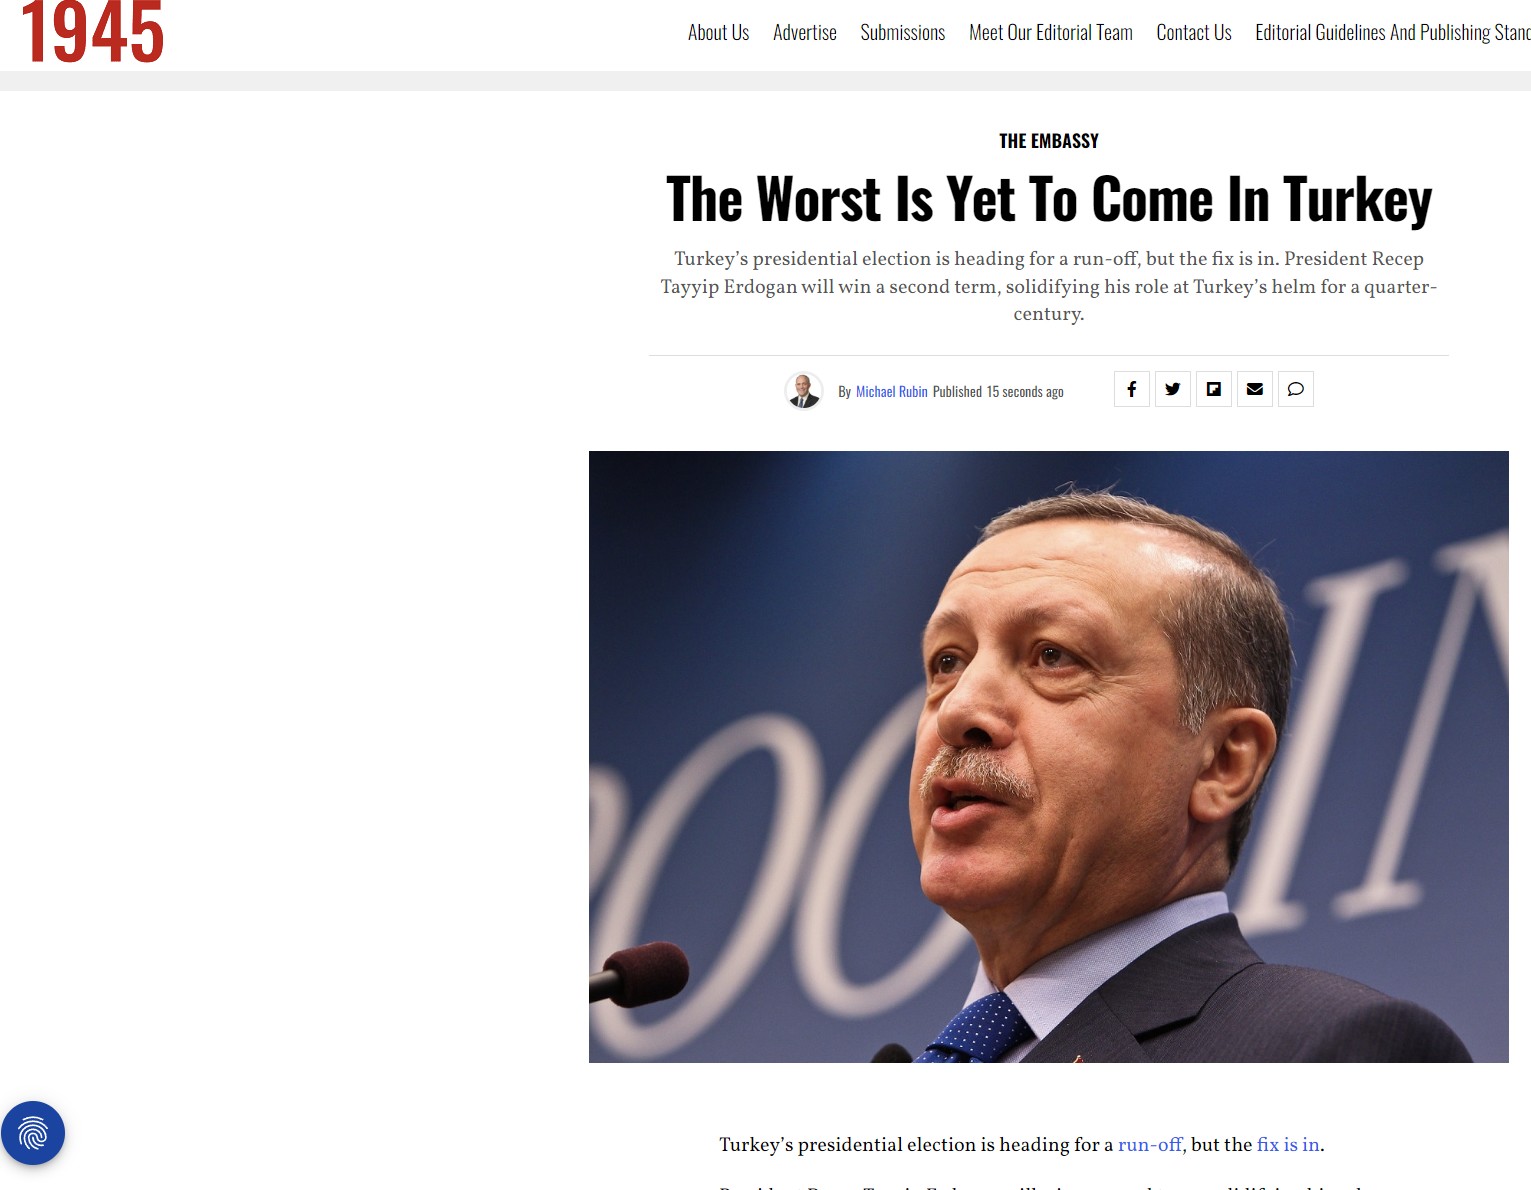 Άλλο ένα άρθρο-μαχαιριά του Μάικλ Ρούμπιν για Ερντογάν με αφορμή τον πρώτο γύρο των εκλογών! “Θα μπορούσε να γίνει ο πρώτος τρισεκατομμυριούχος στον κόσμο – Τα χειρότερα έρχονται για την Τουρκία”